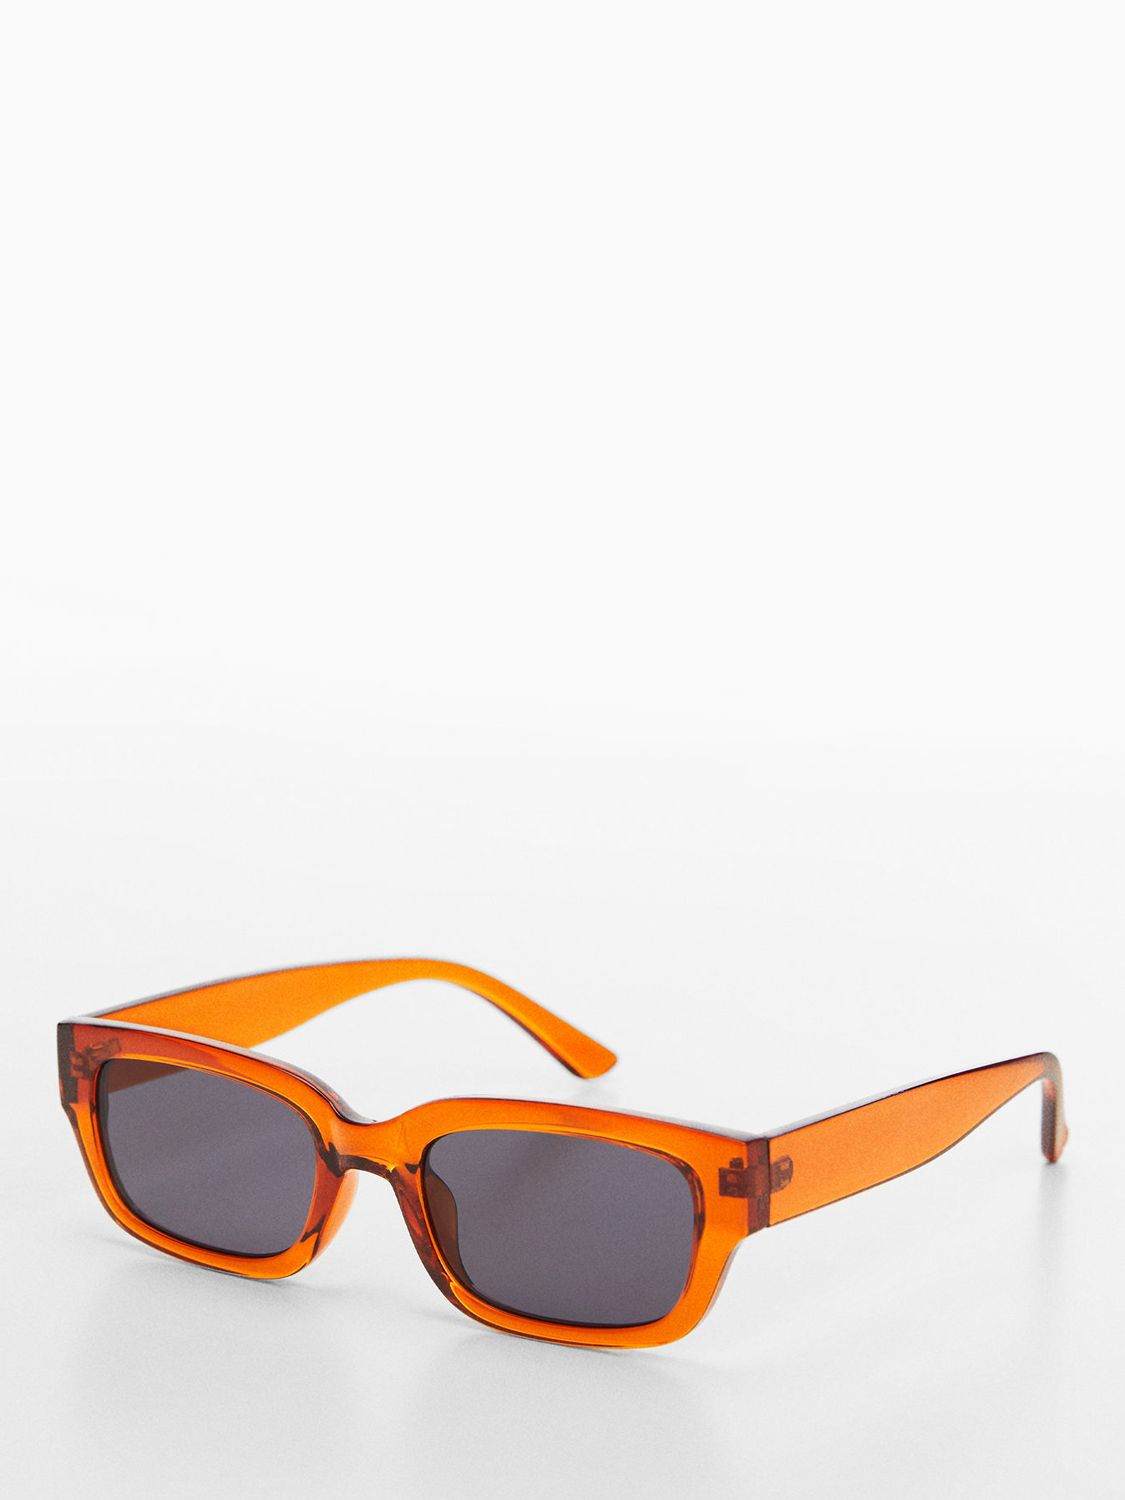 Mango Magali Rectangular Sunglasses, Orange/Grey, One Size